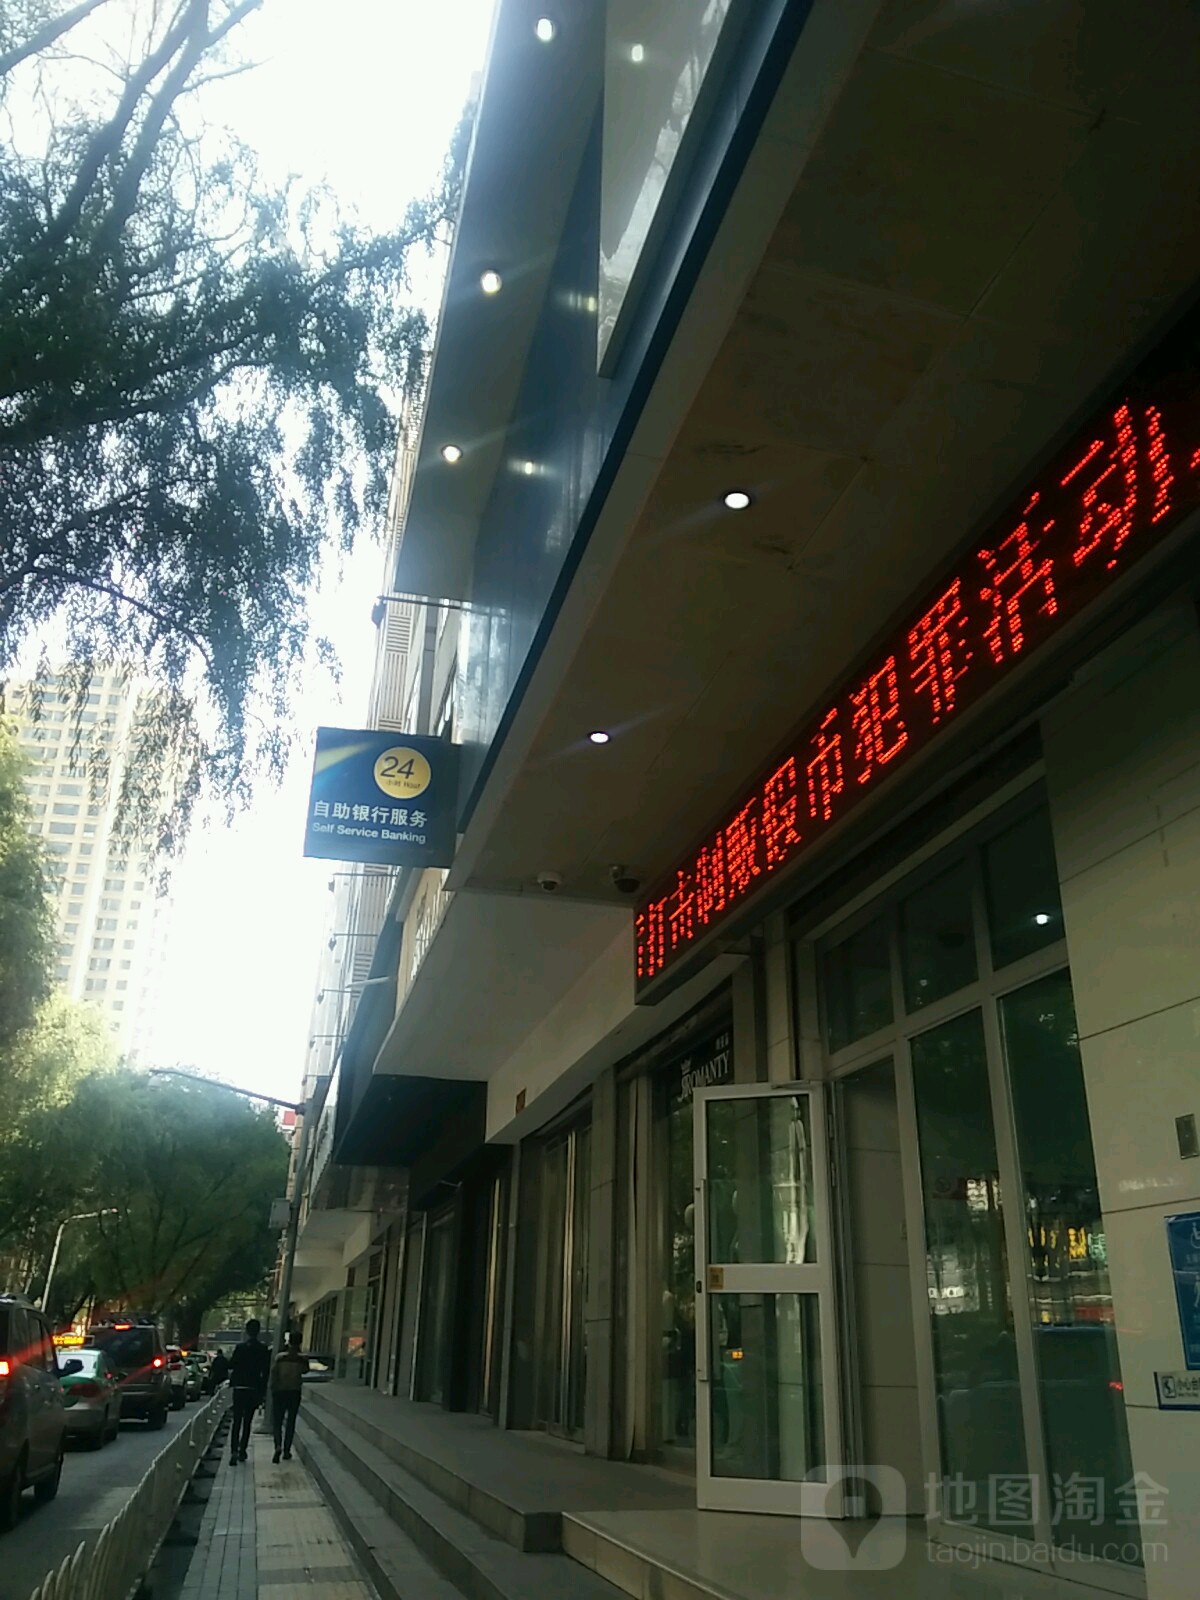 中國建設銀行24小時自助銀行(西寧解放路支行)